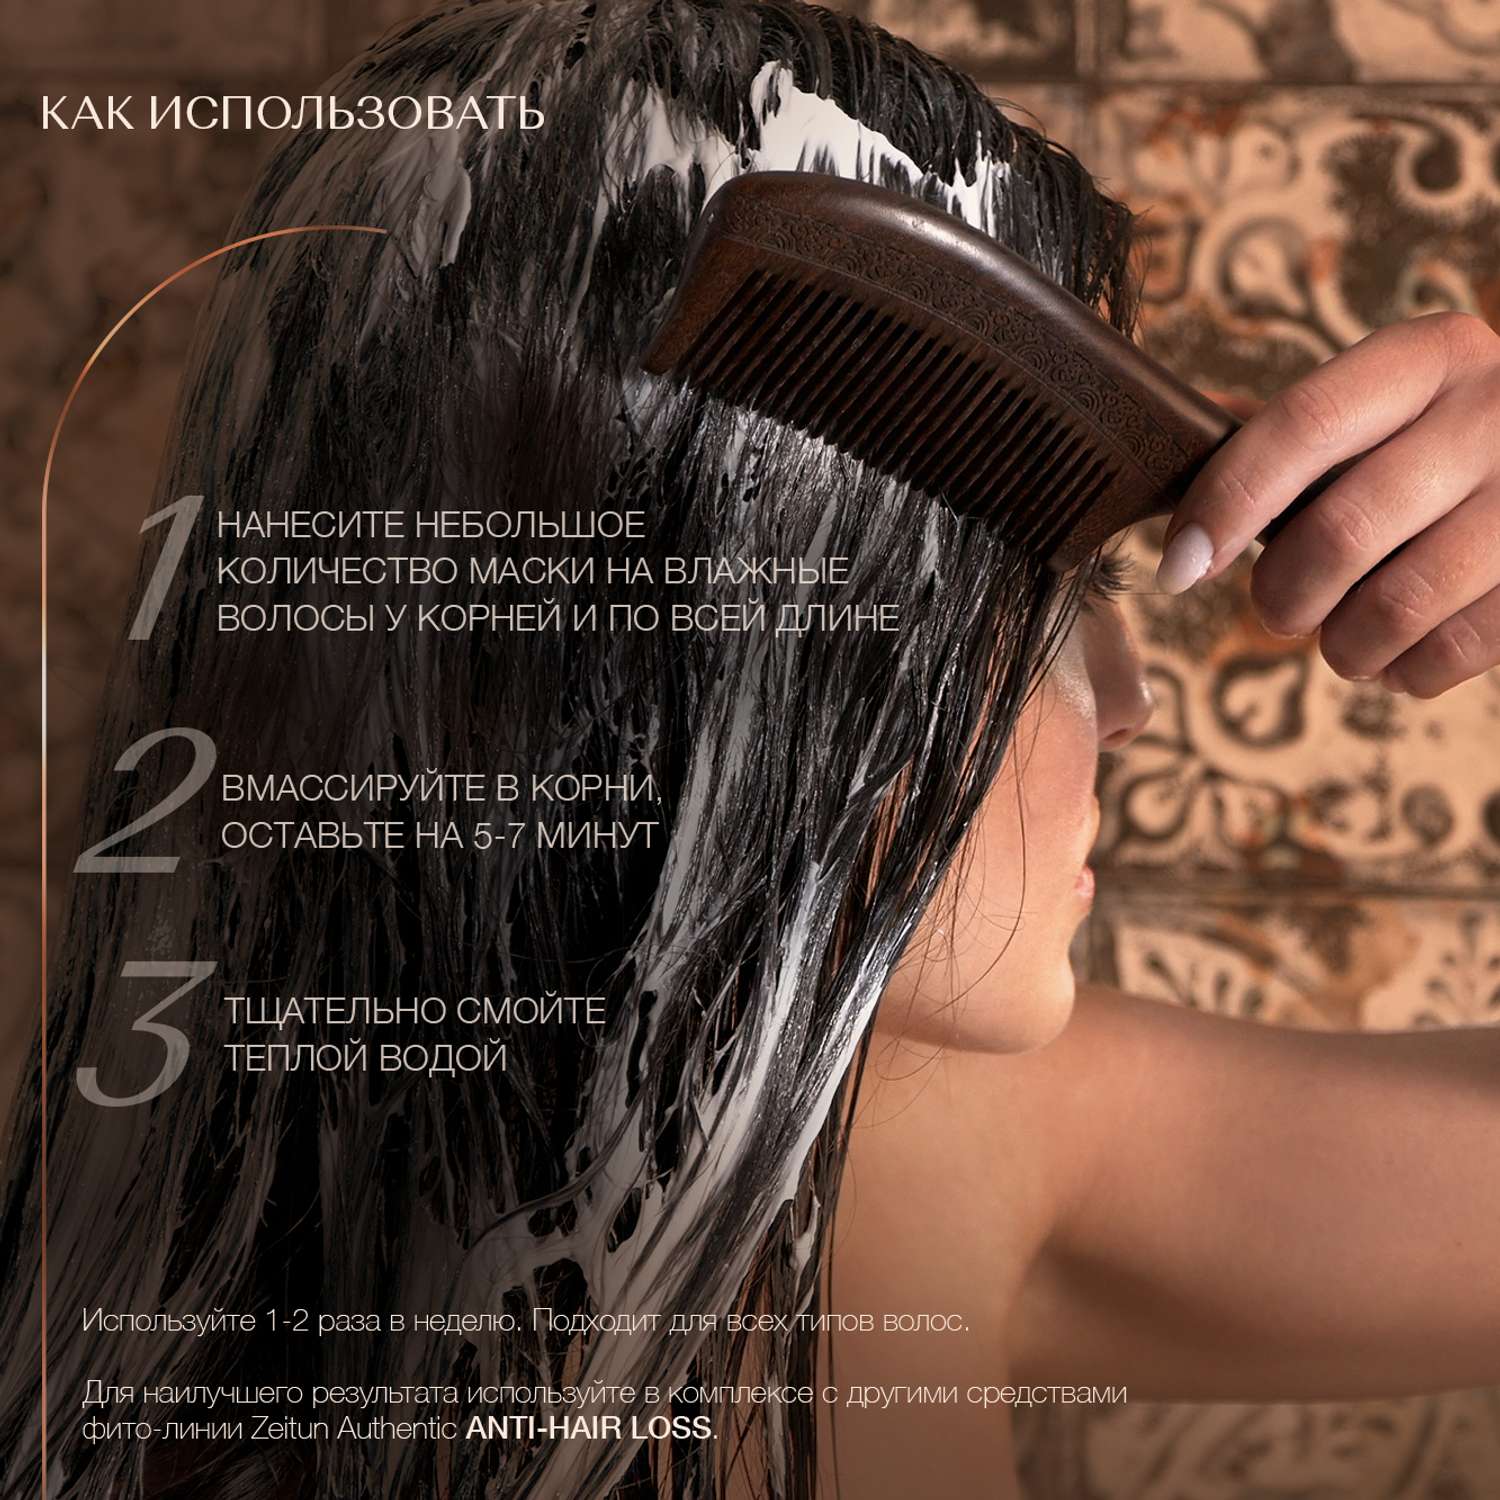 Маски для роста и укрепления волос - Статьи и обзоры | Интернет магазин COSMOHIT